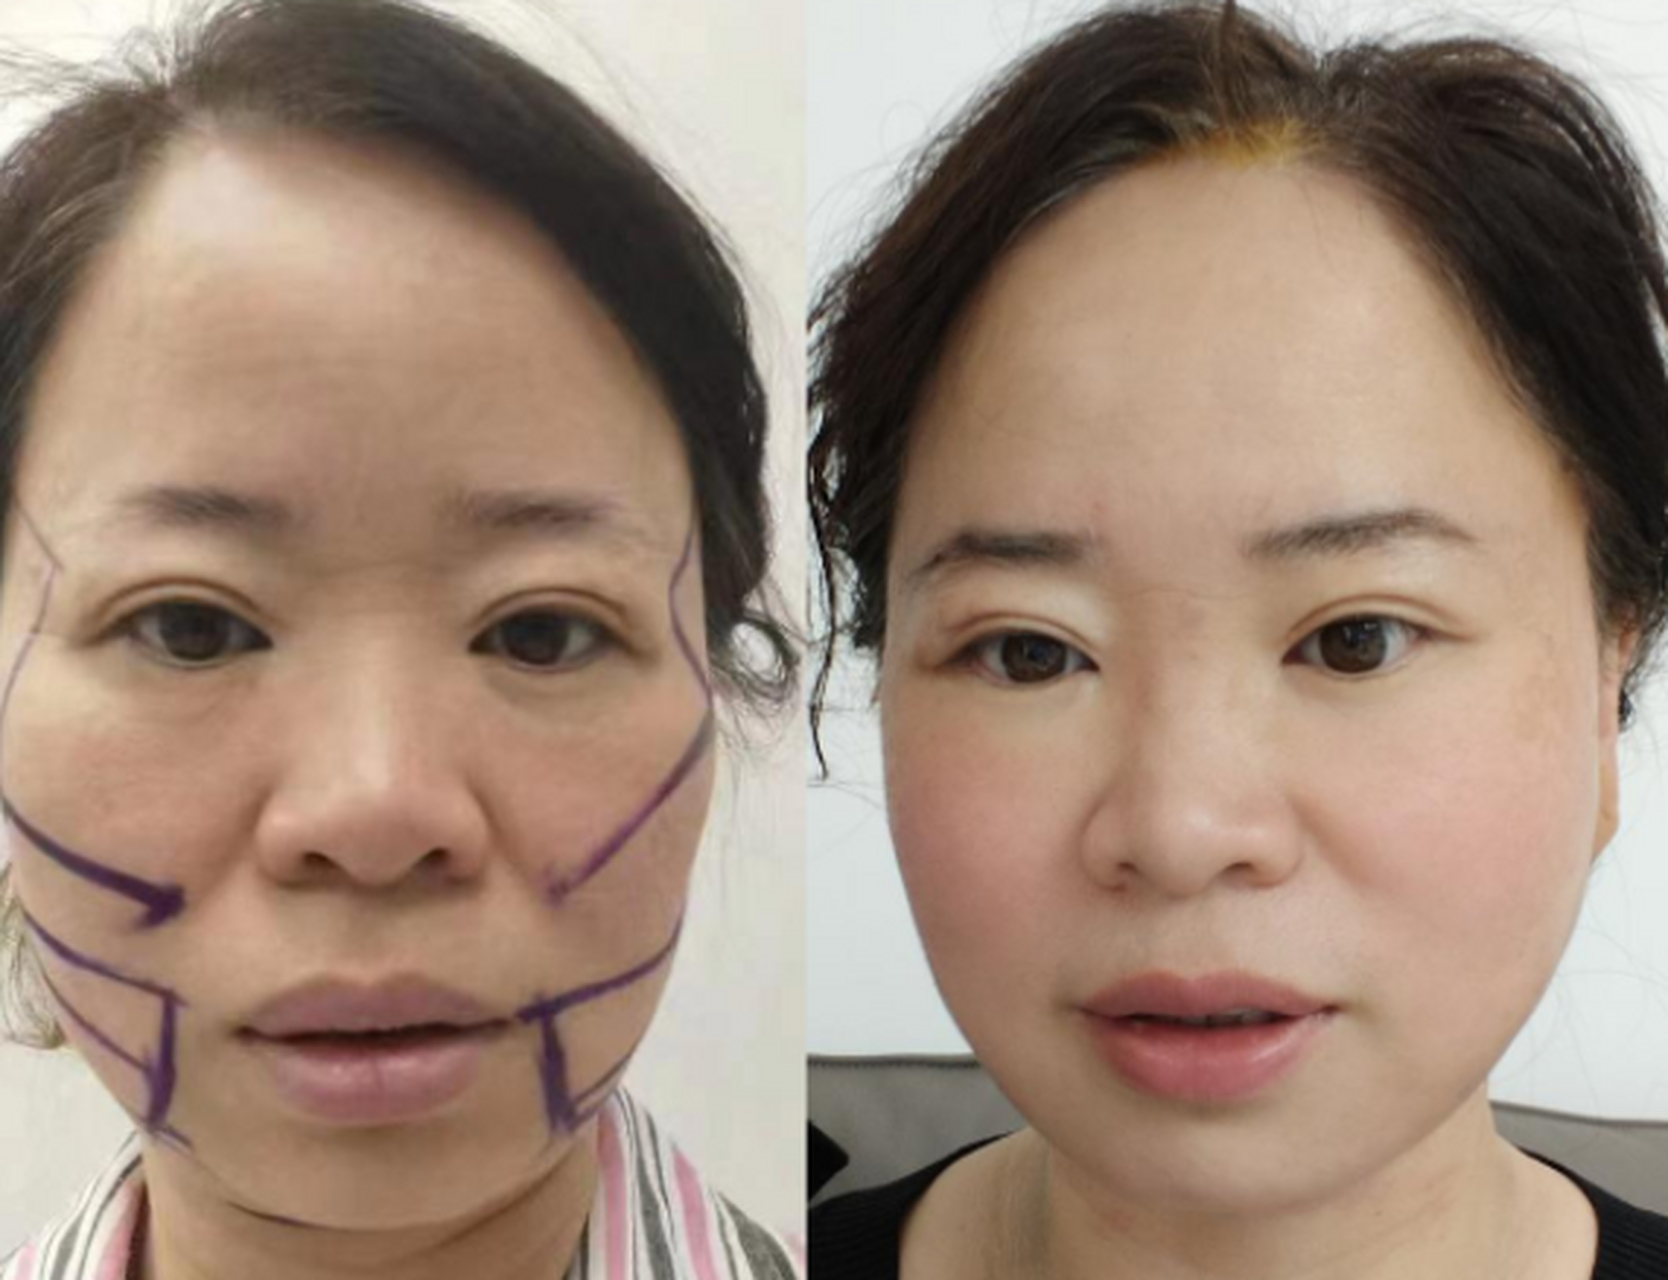 面部拉皮手术图片对比图片